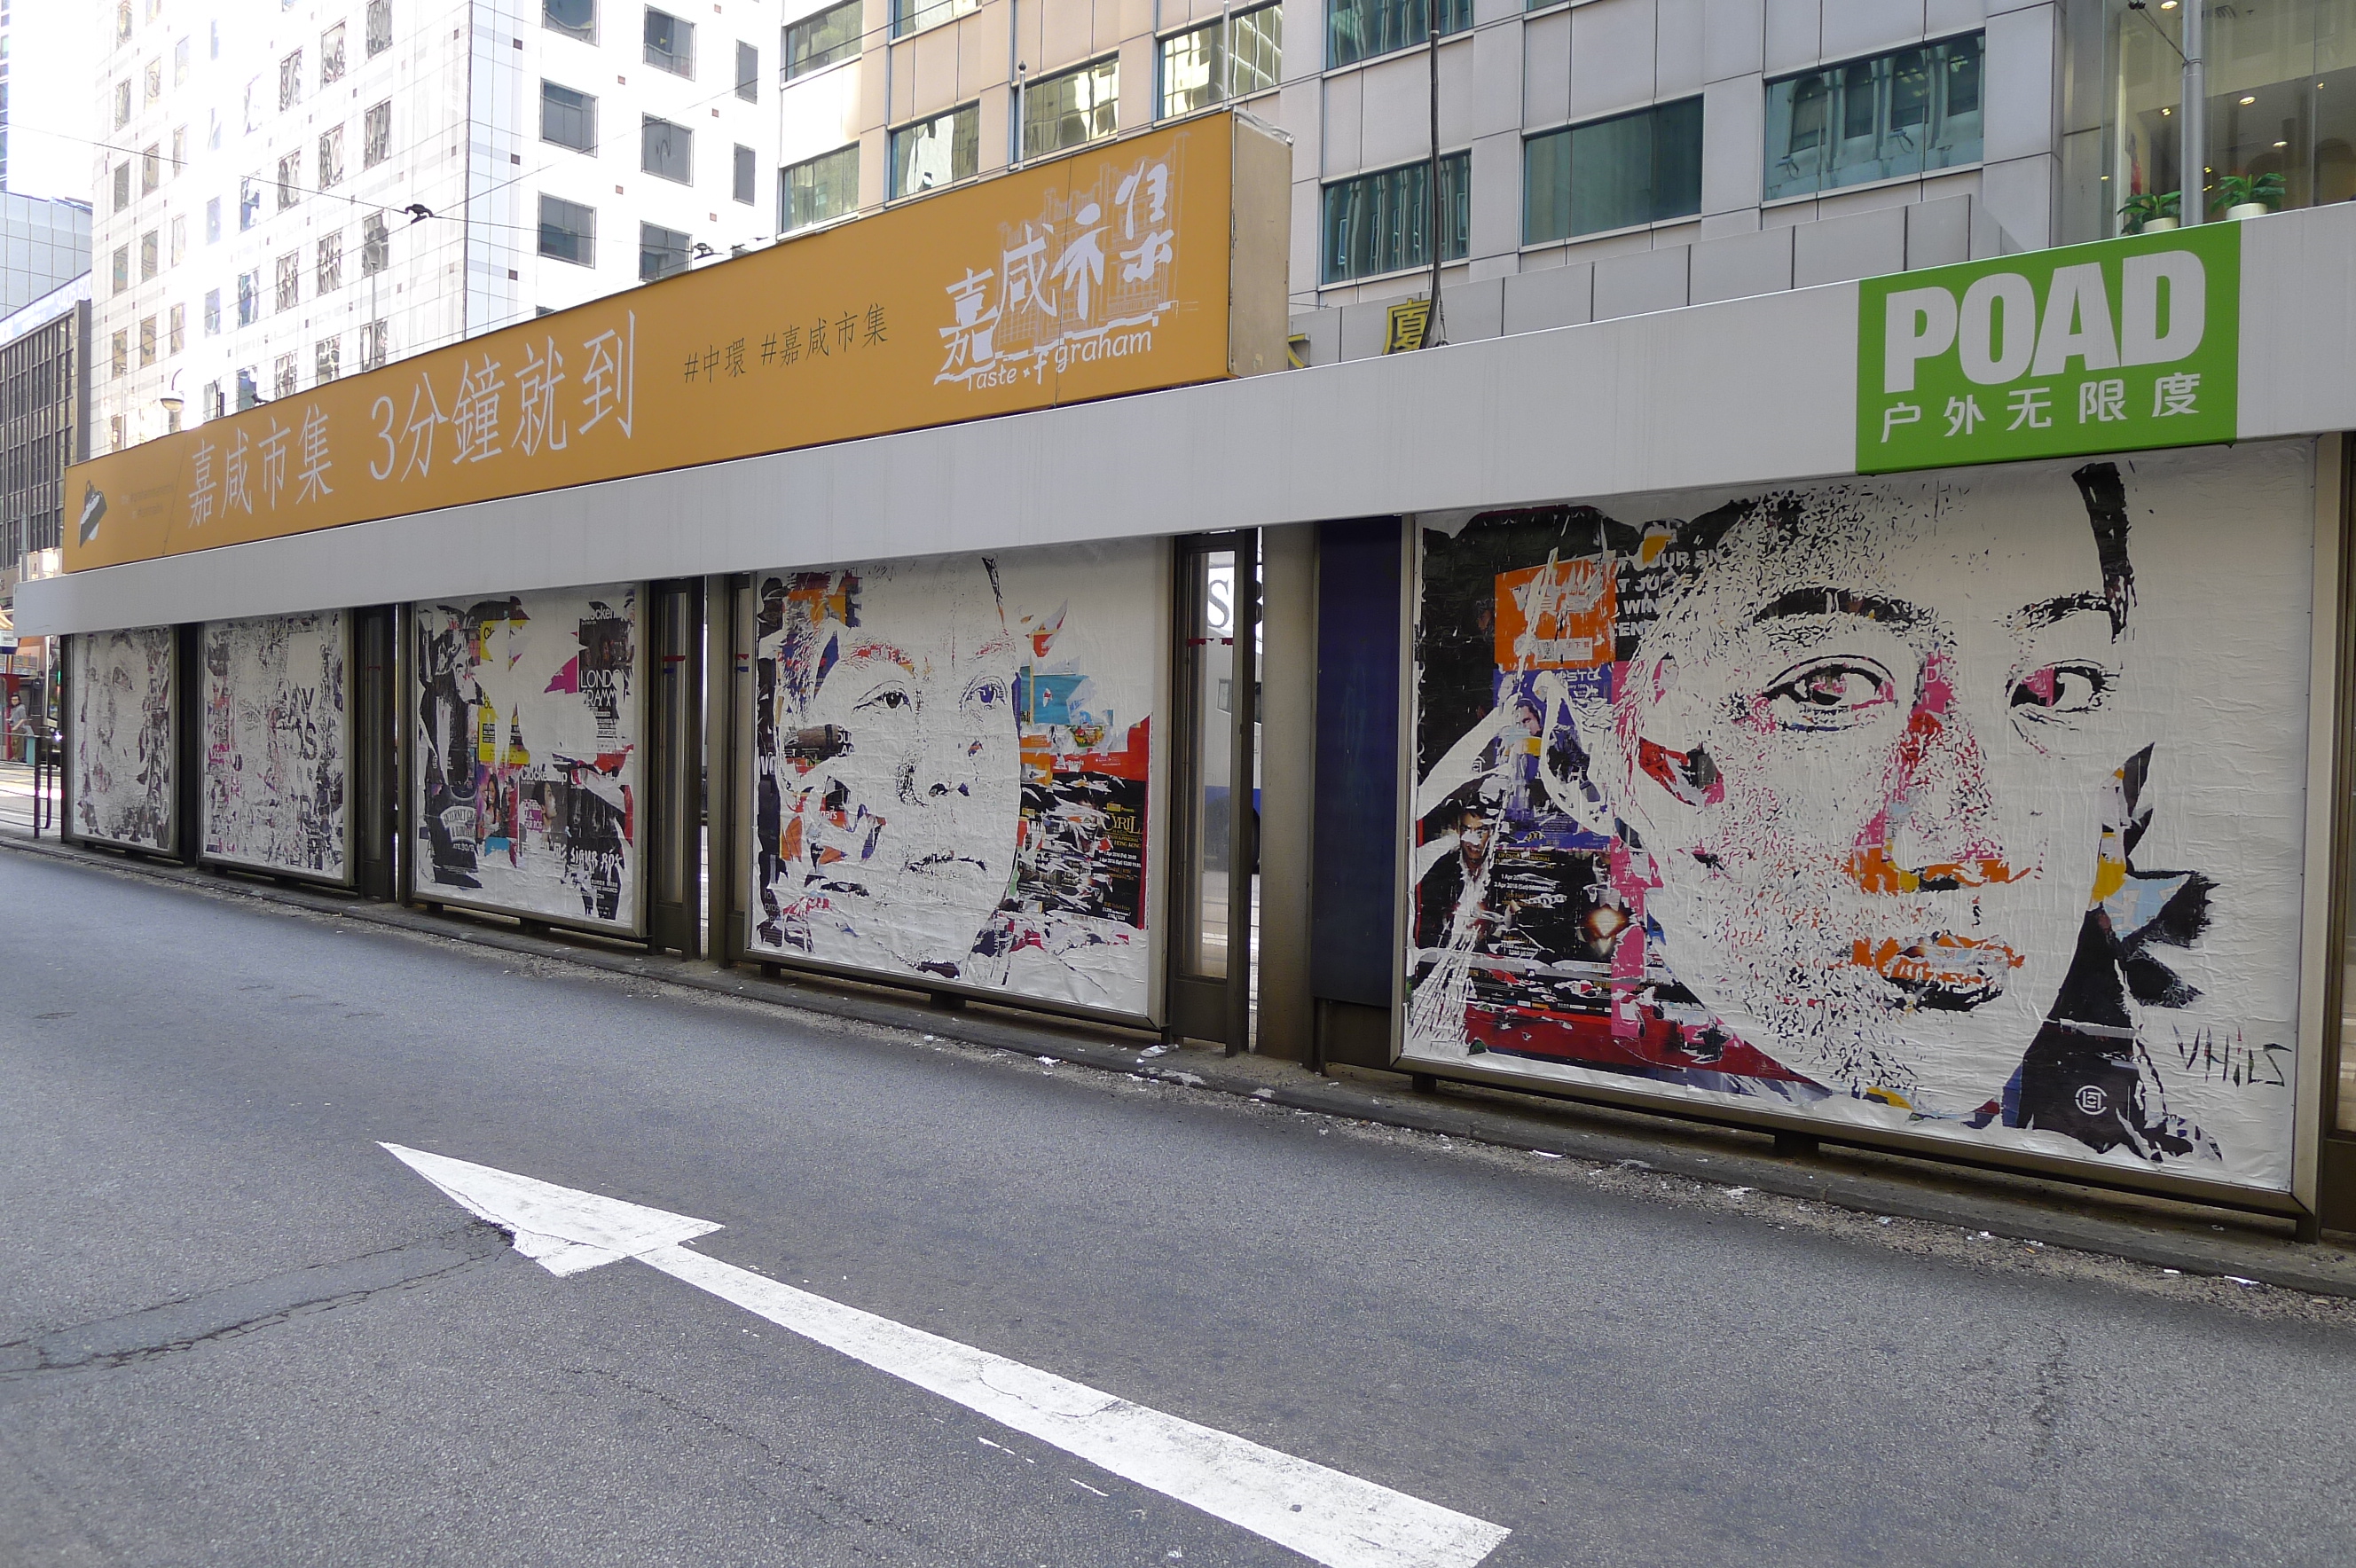 Vhils murals at a tram stop in Hong Kong, 2016